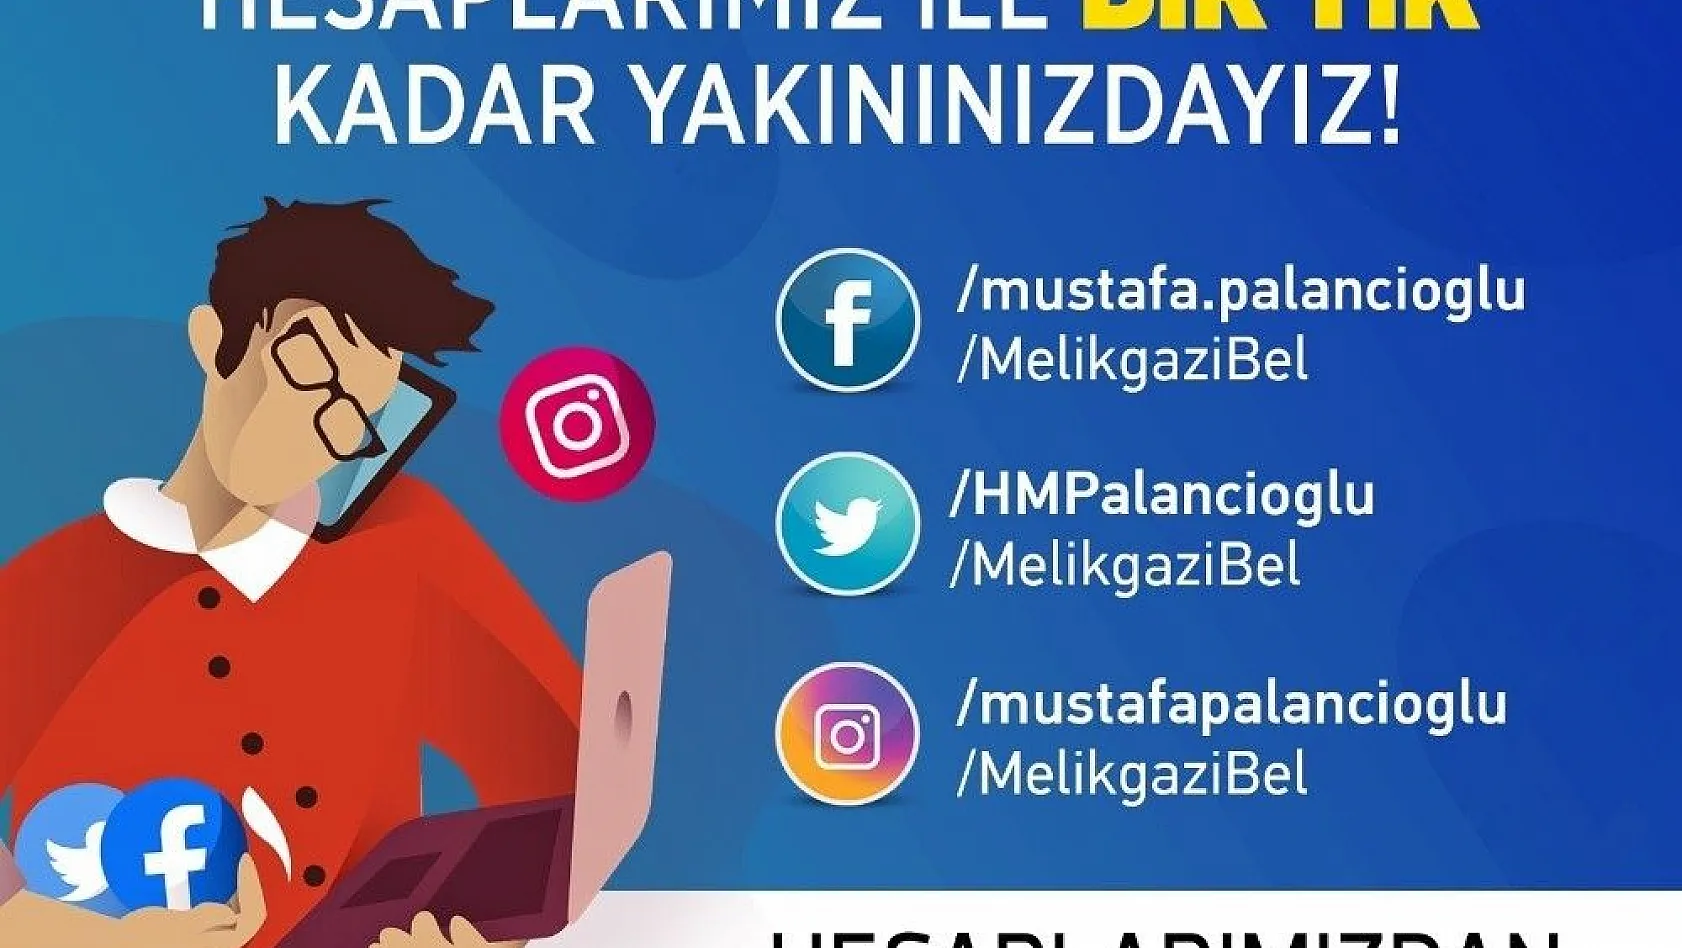 Melikgazi Belediyesi'nden sosyal medya kullanıcılarına davet
